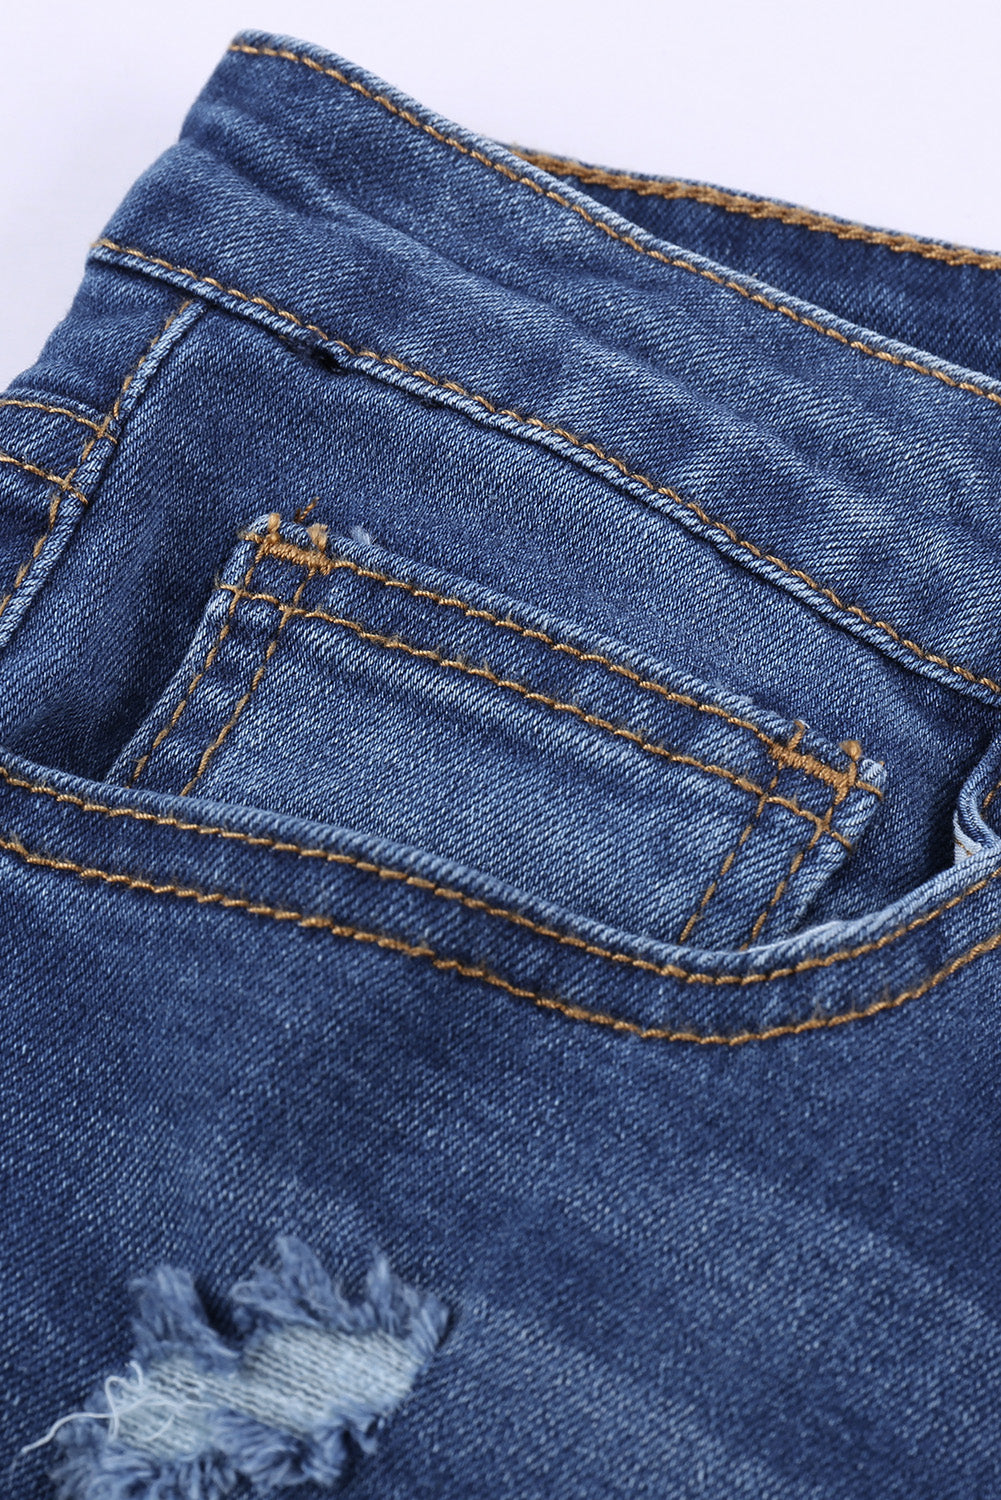 Leopard Patch Destroyed Skinny Blue Jeans Jeans JT's Designer Fashion